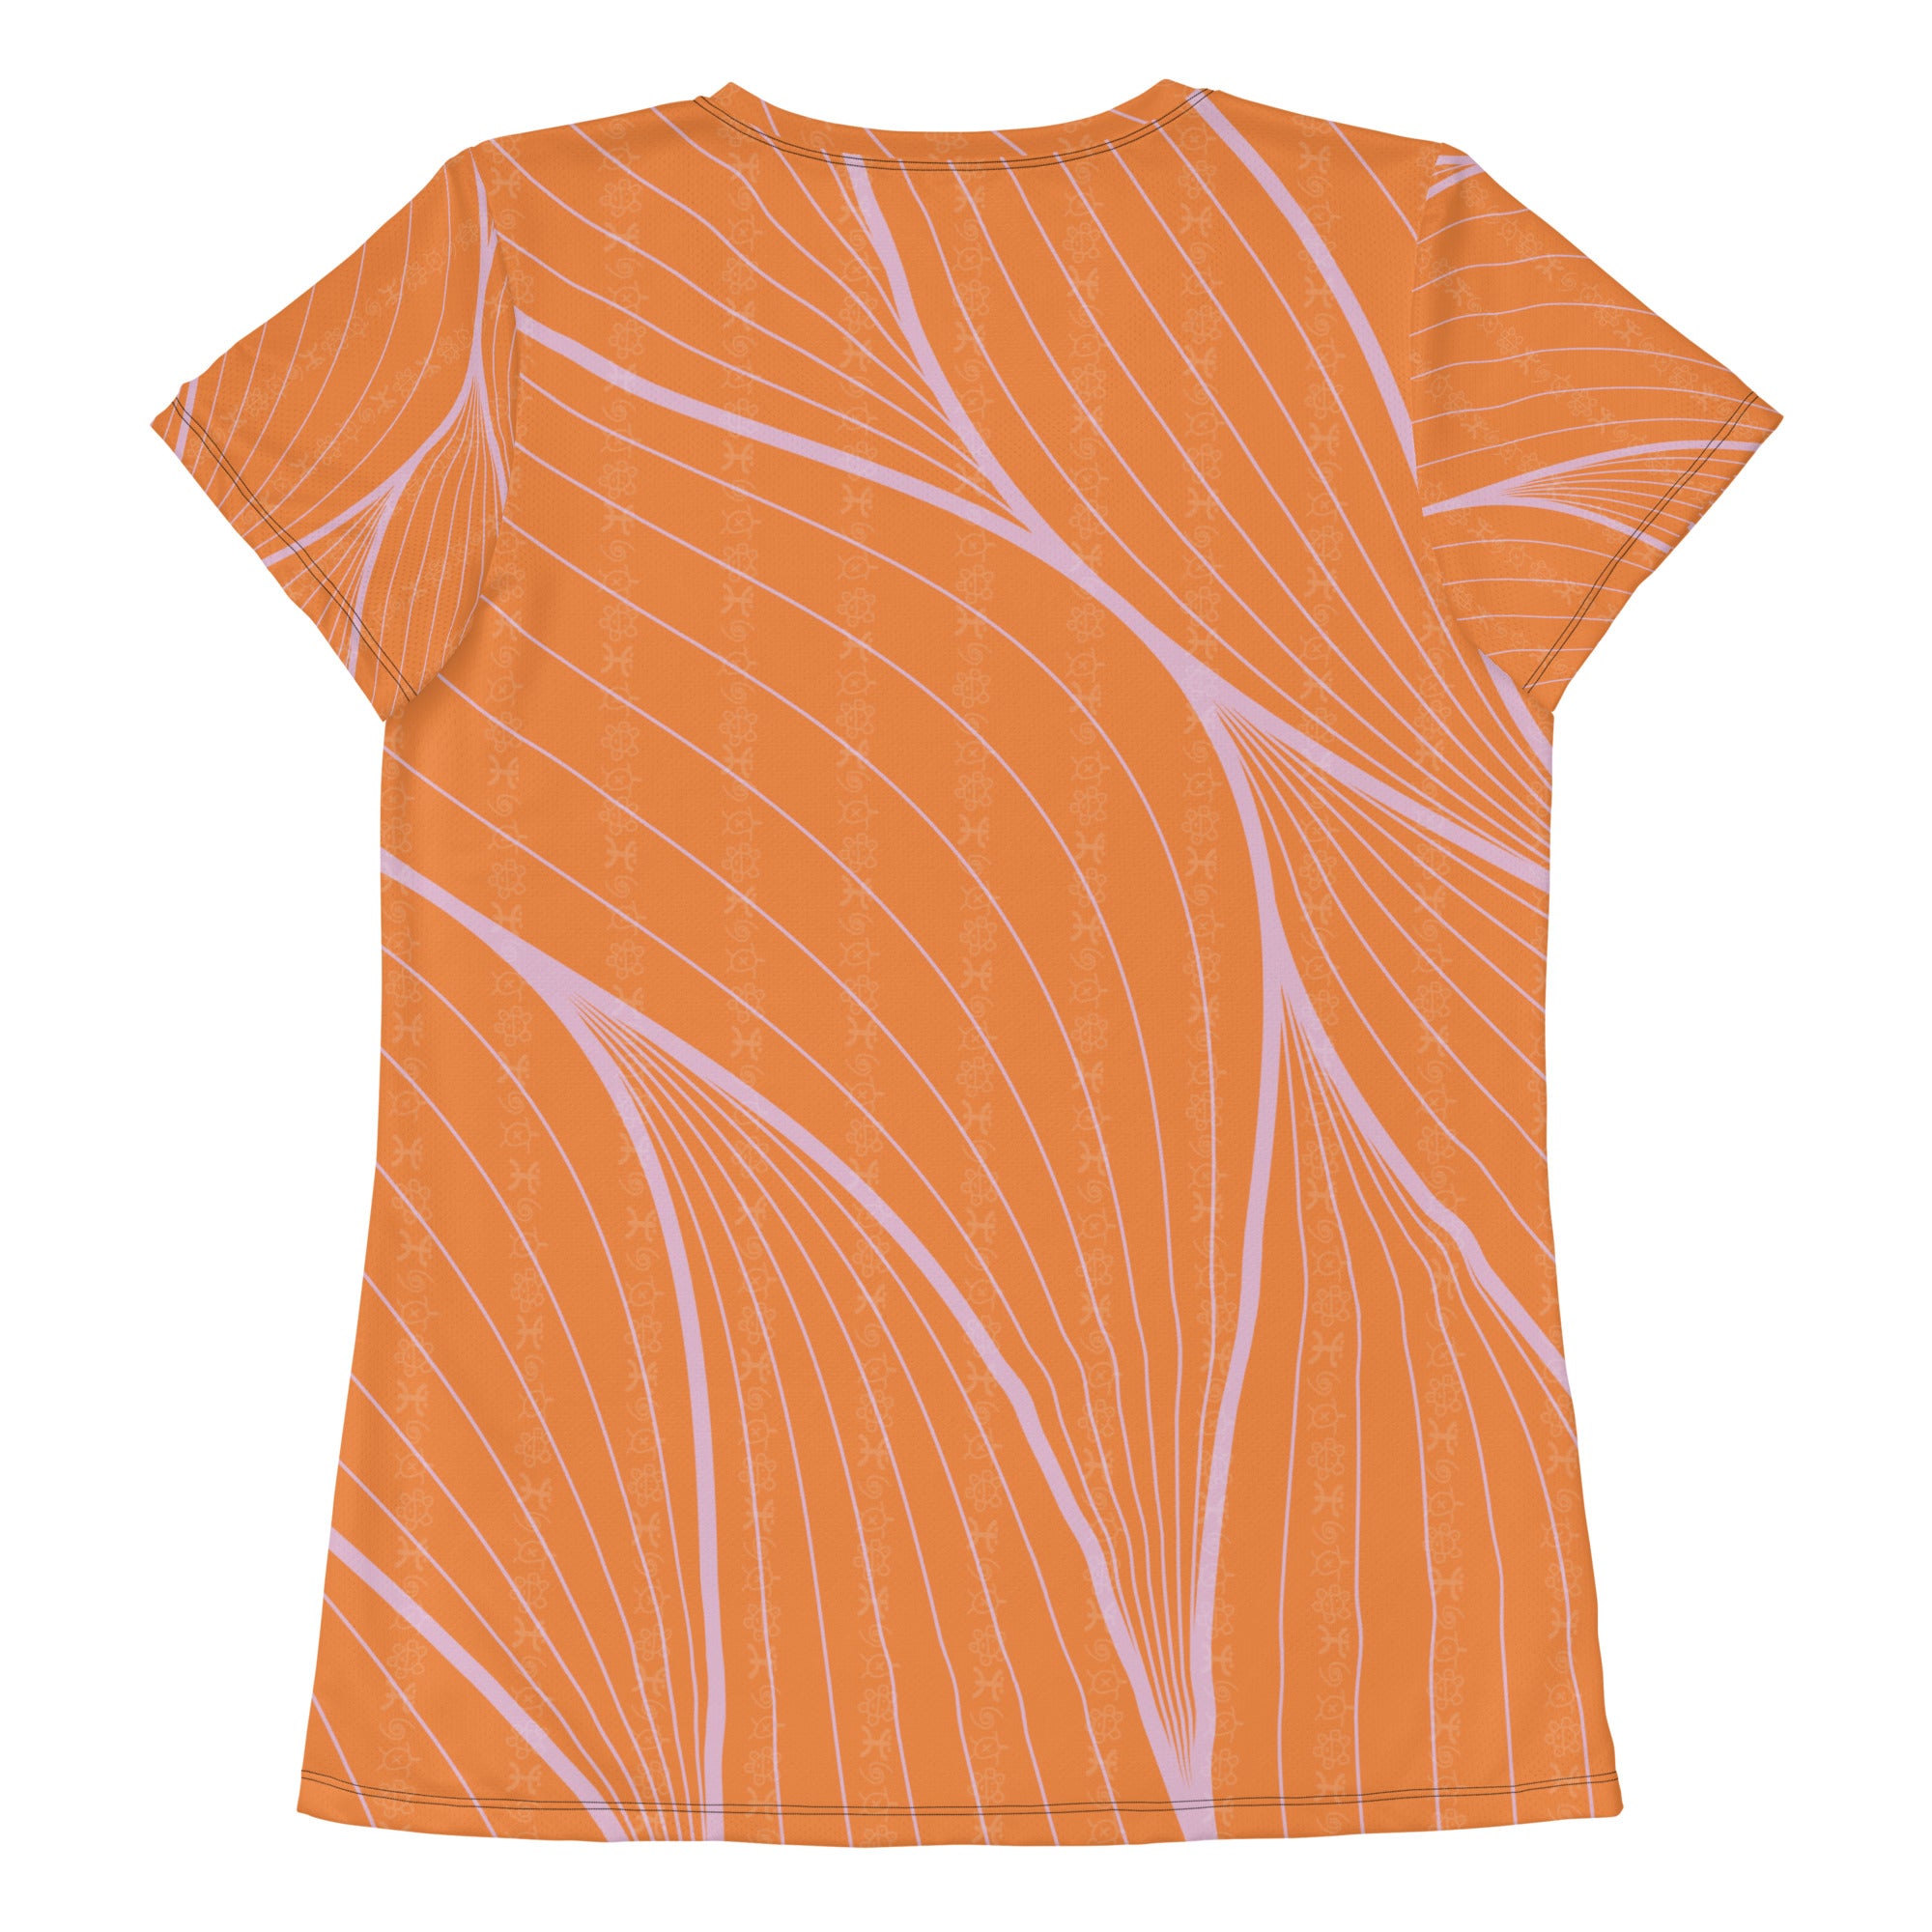 AGAD Tribal Women's Short Sleeve (Vibrant Orange)